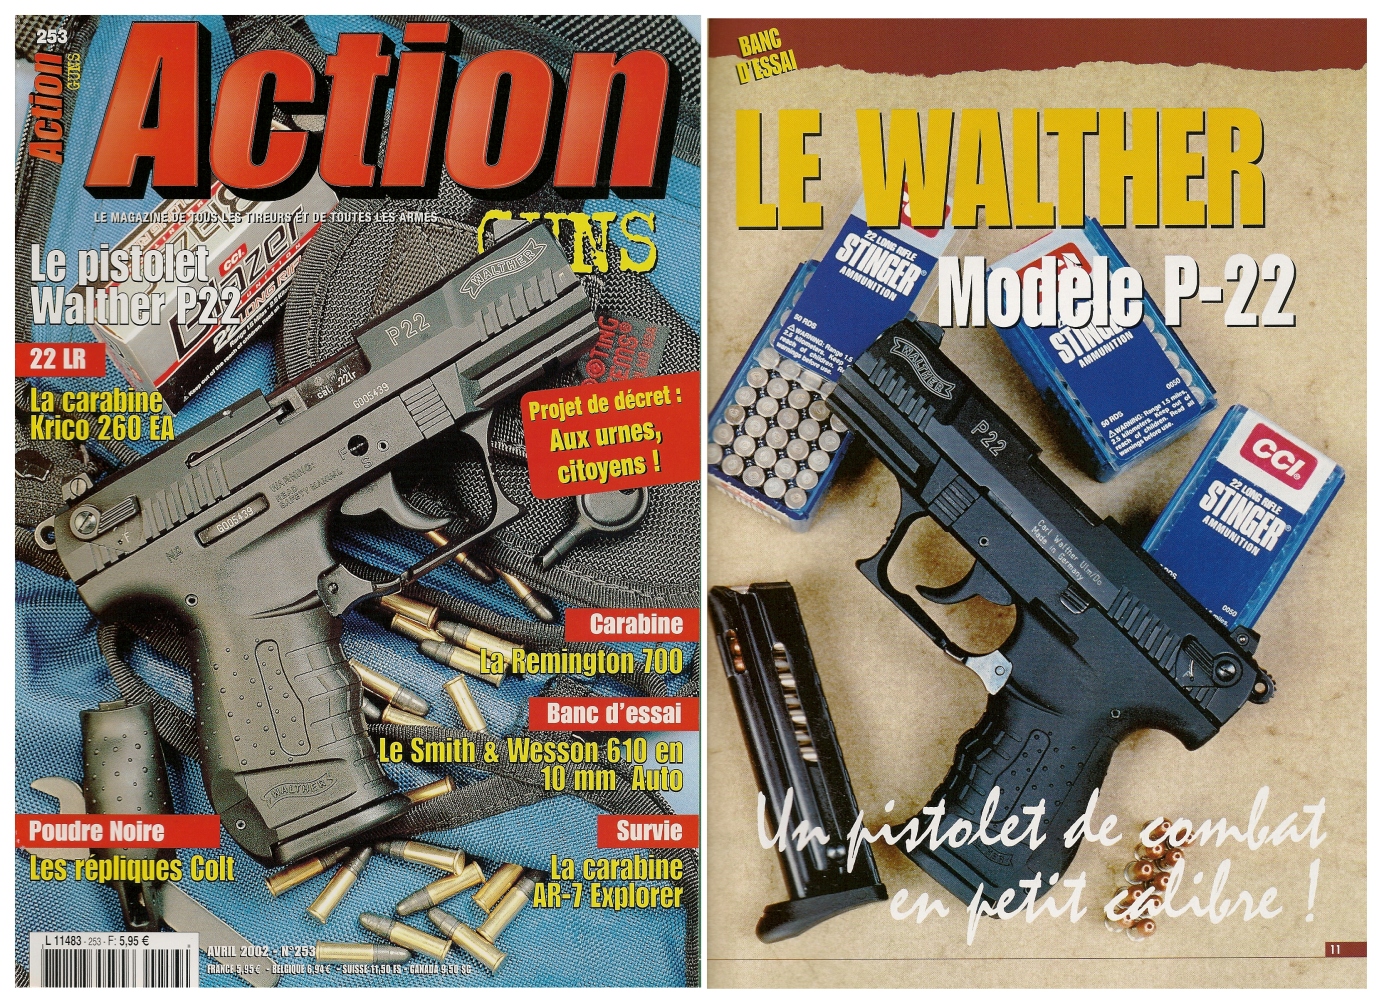 Le banc d’essai du Walther P-22 a été publié sur 8 pages dans le magazine Action Guns n°253 (avril 2002).